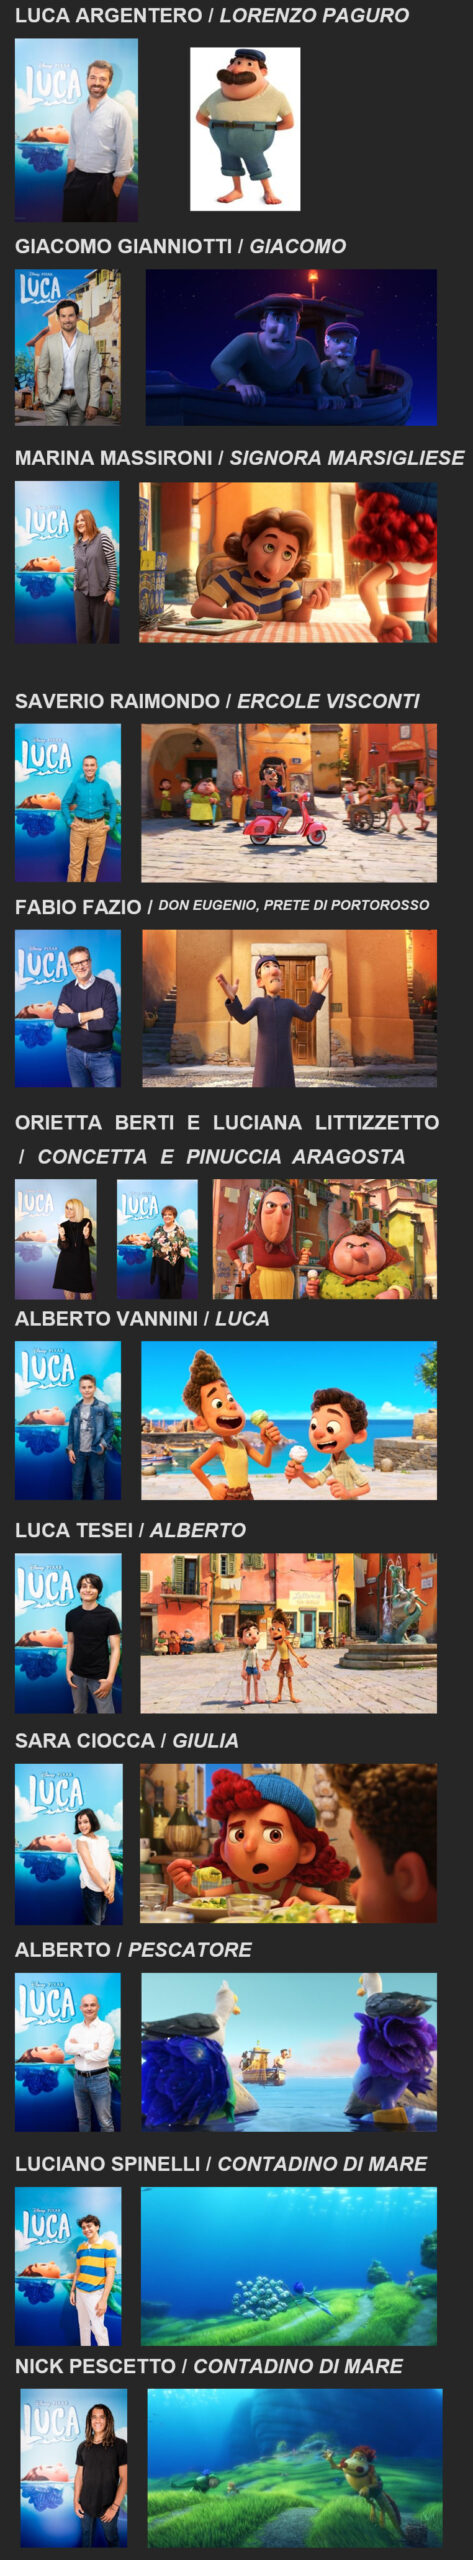 Voci italiane e personaggi del film Luca di Disney e Pixar